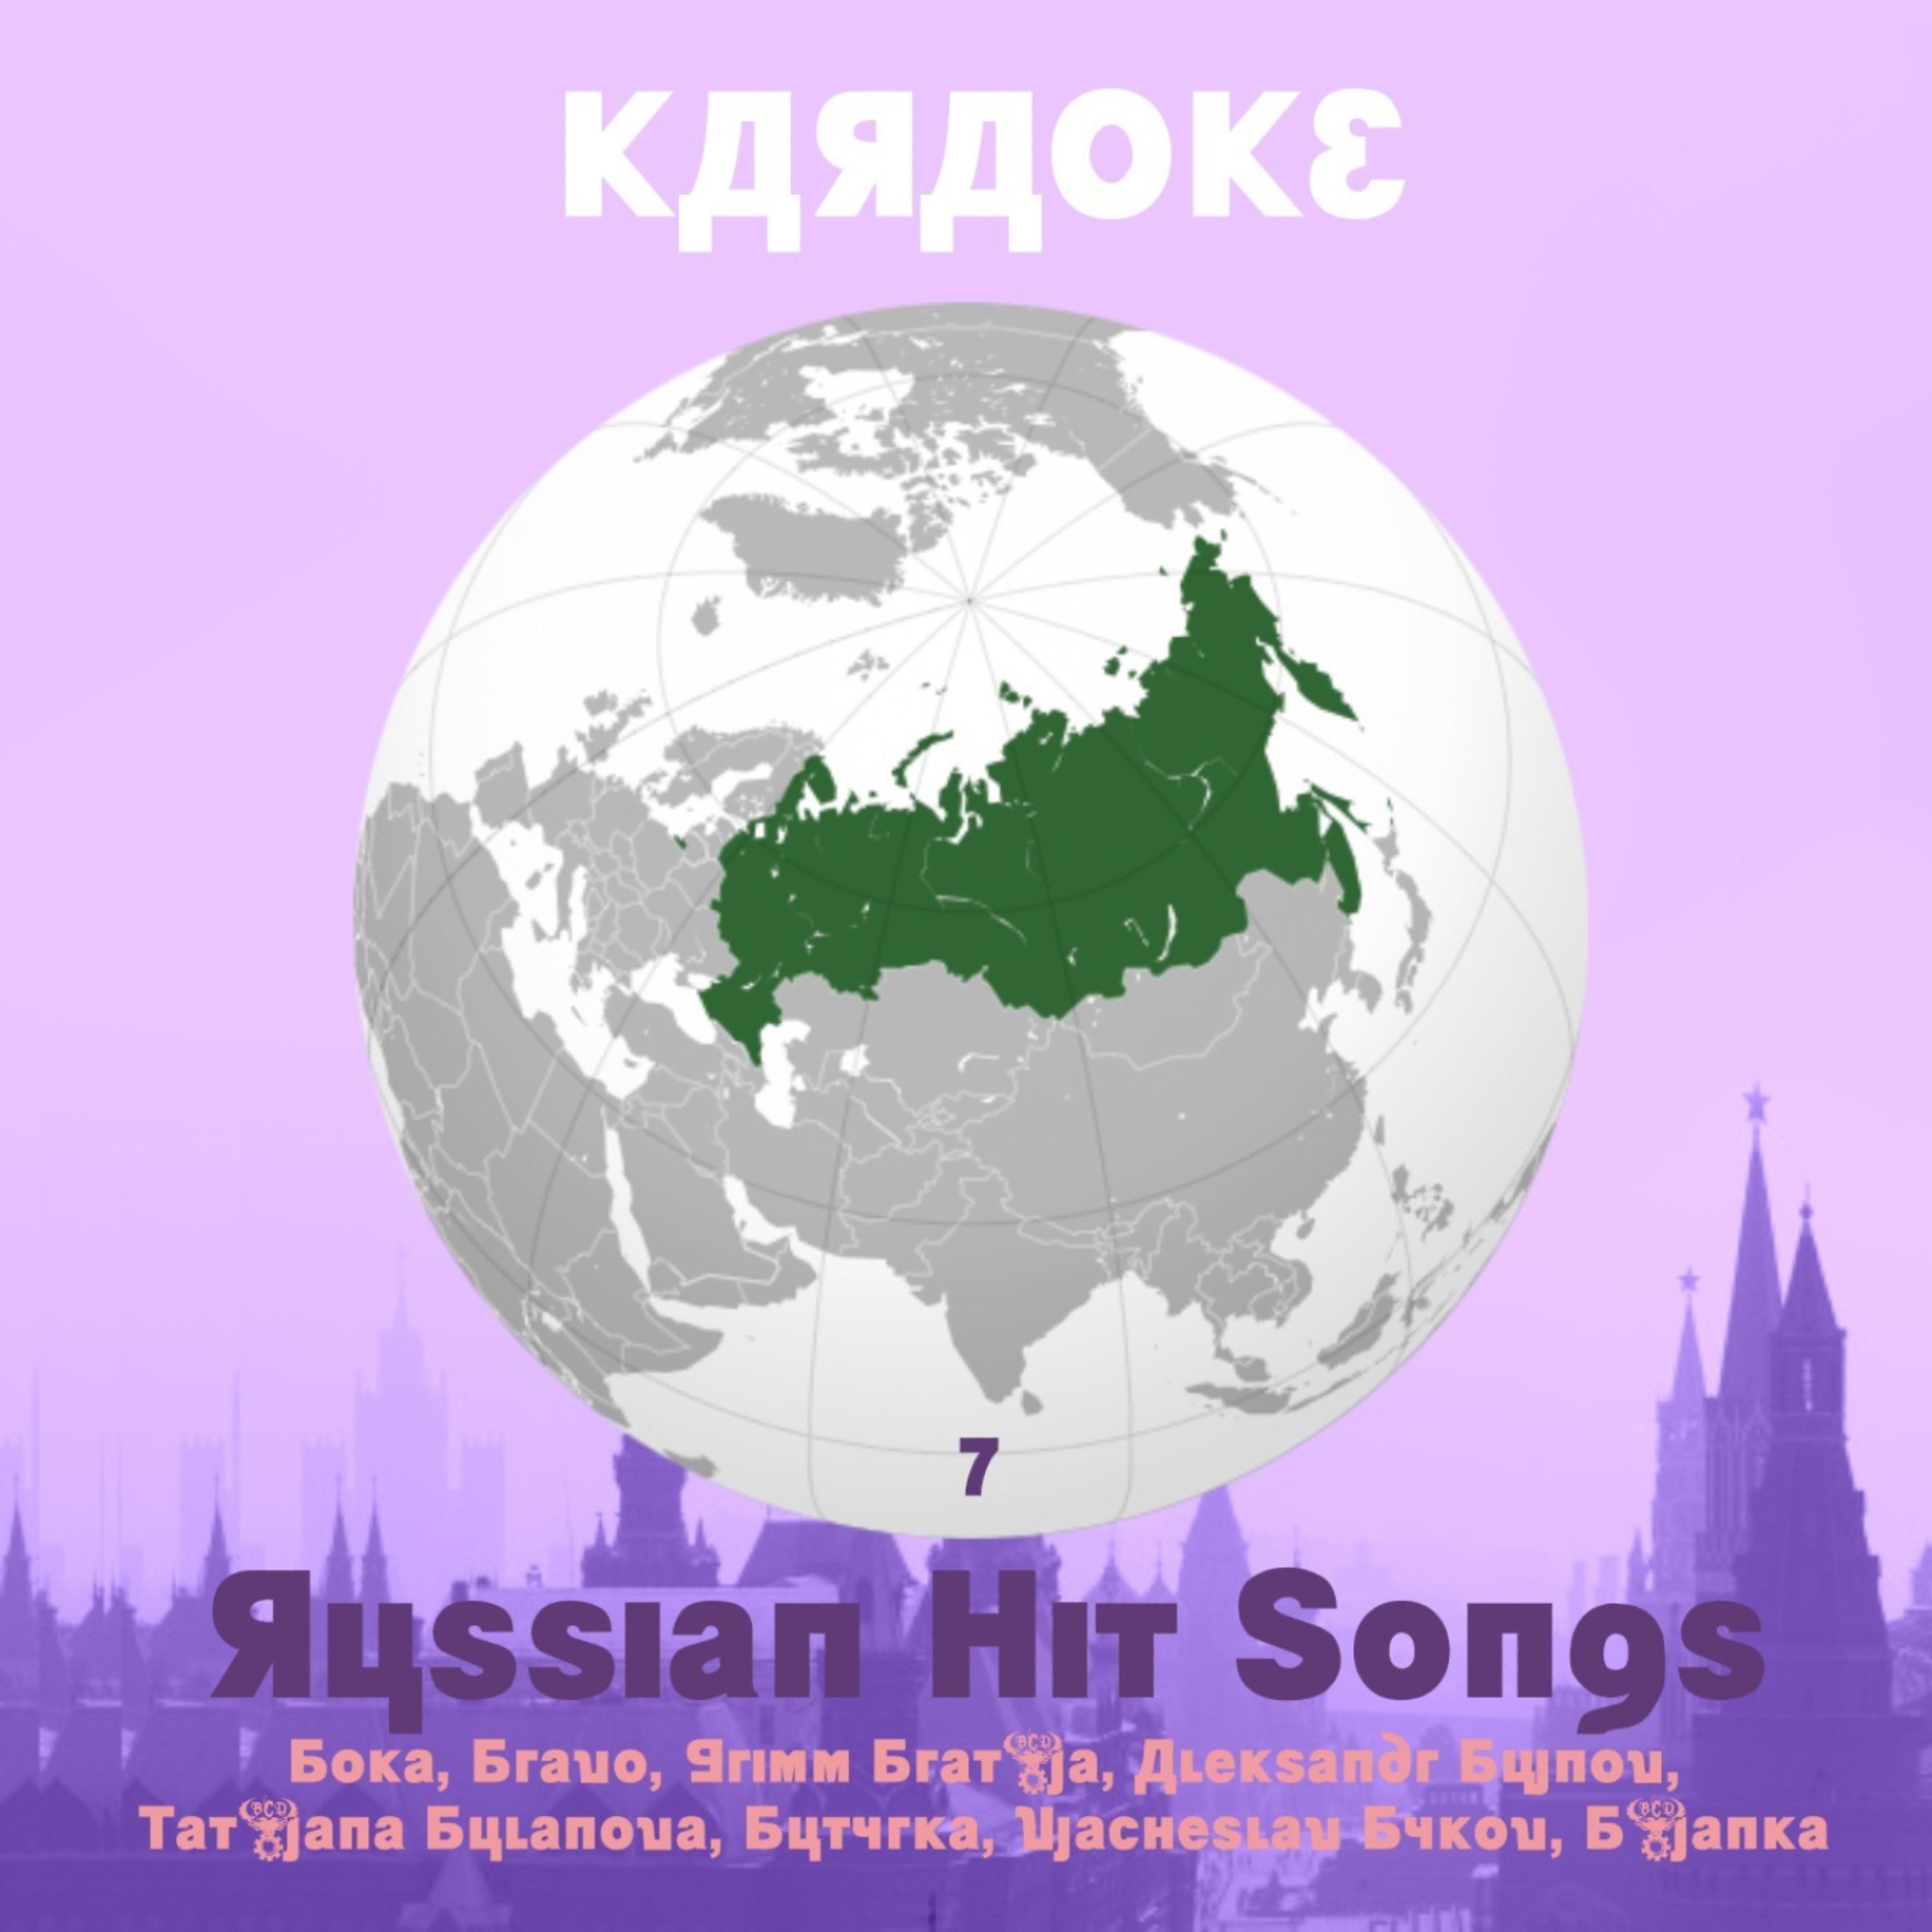 Постер альбома Karaoke, Russian Hit Songs (Boka, Bravo, Grimm Brat’ja, Aleksandr Bujnov), Volume 7